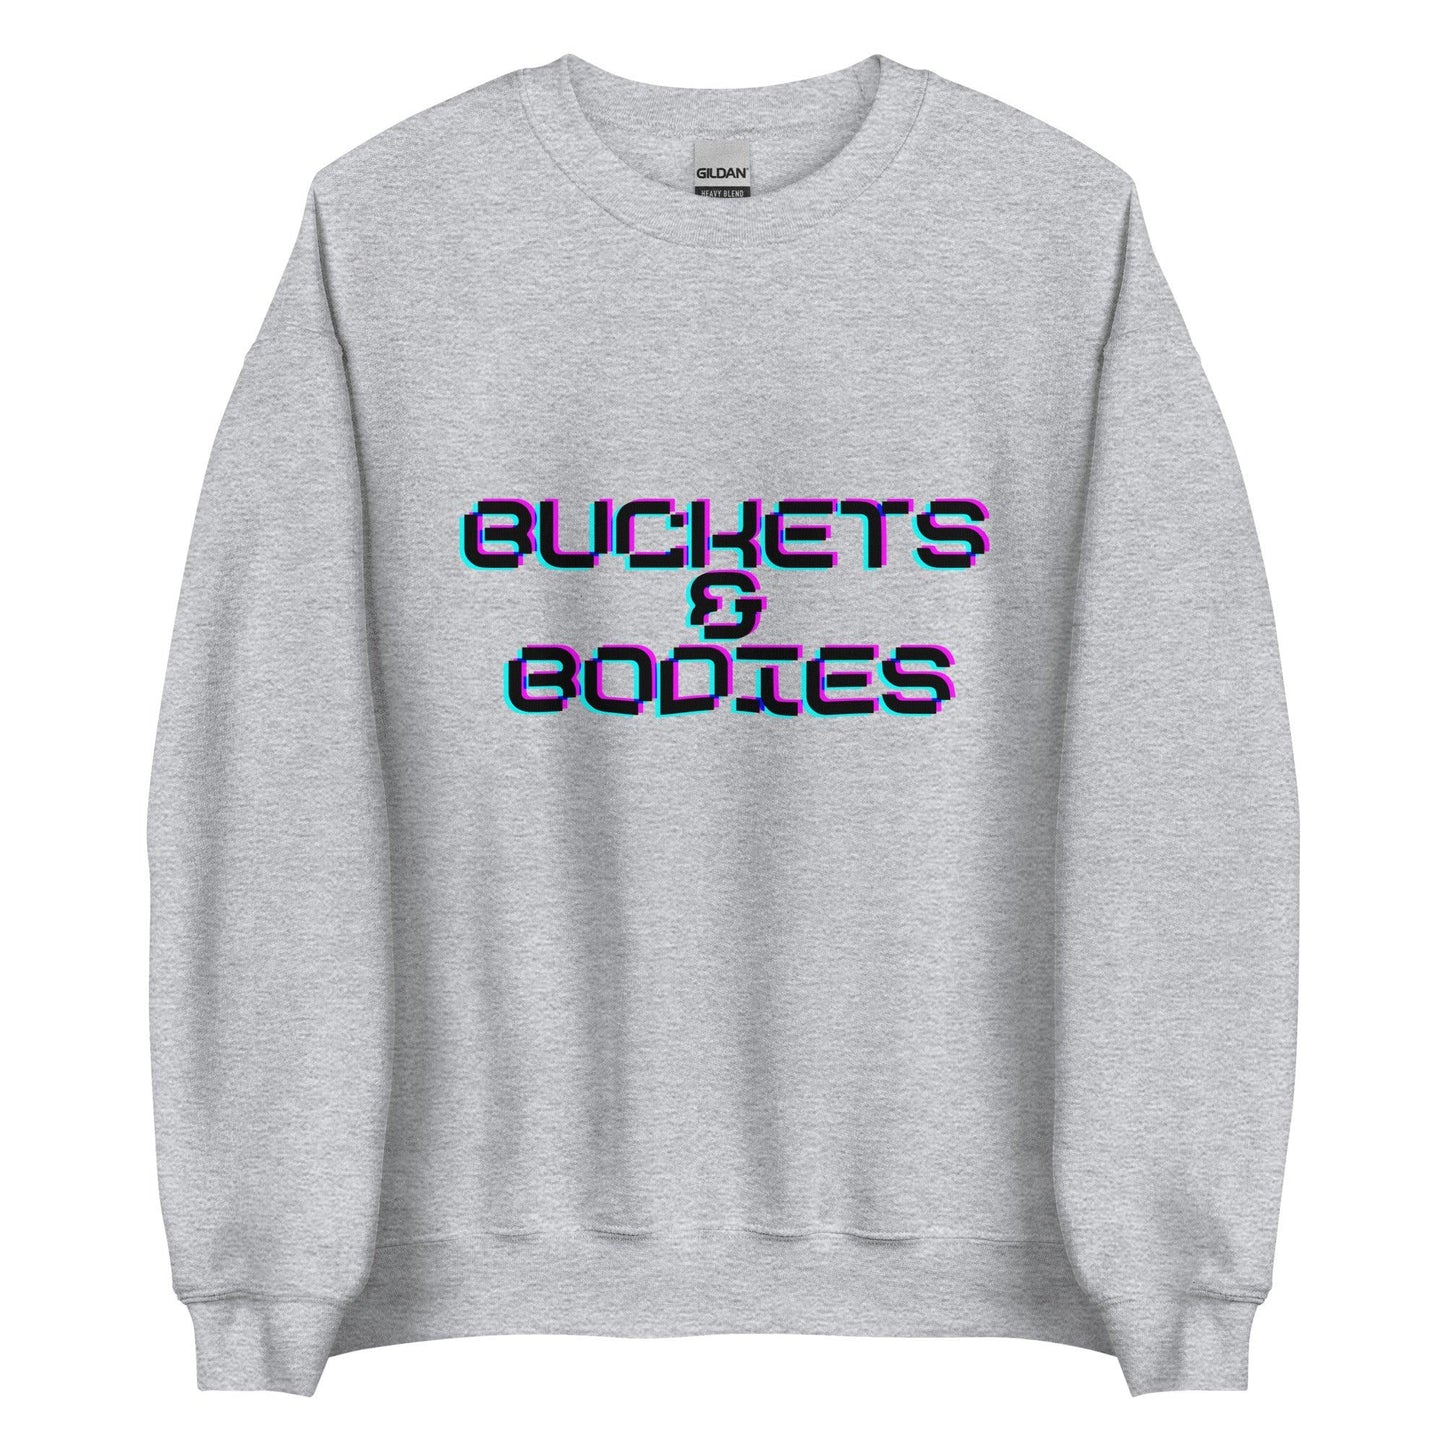 Angelo Sharpless "Buckets & Bodies" Sweatshirt - Fan Arch